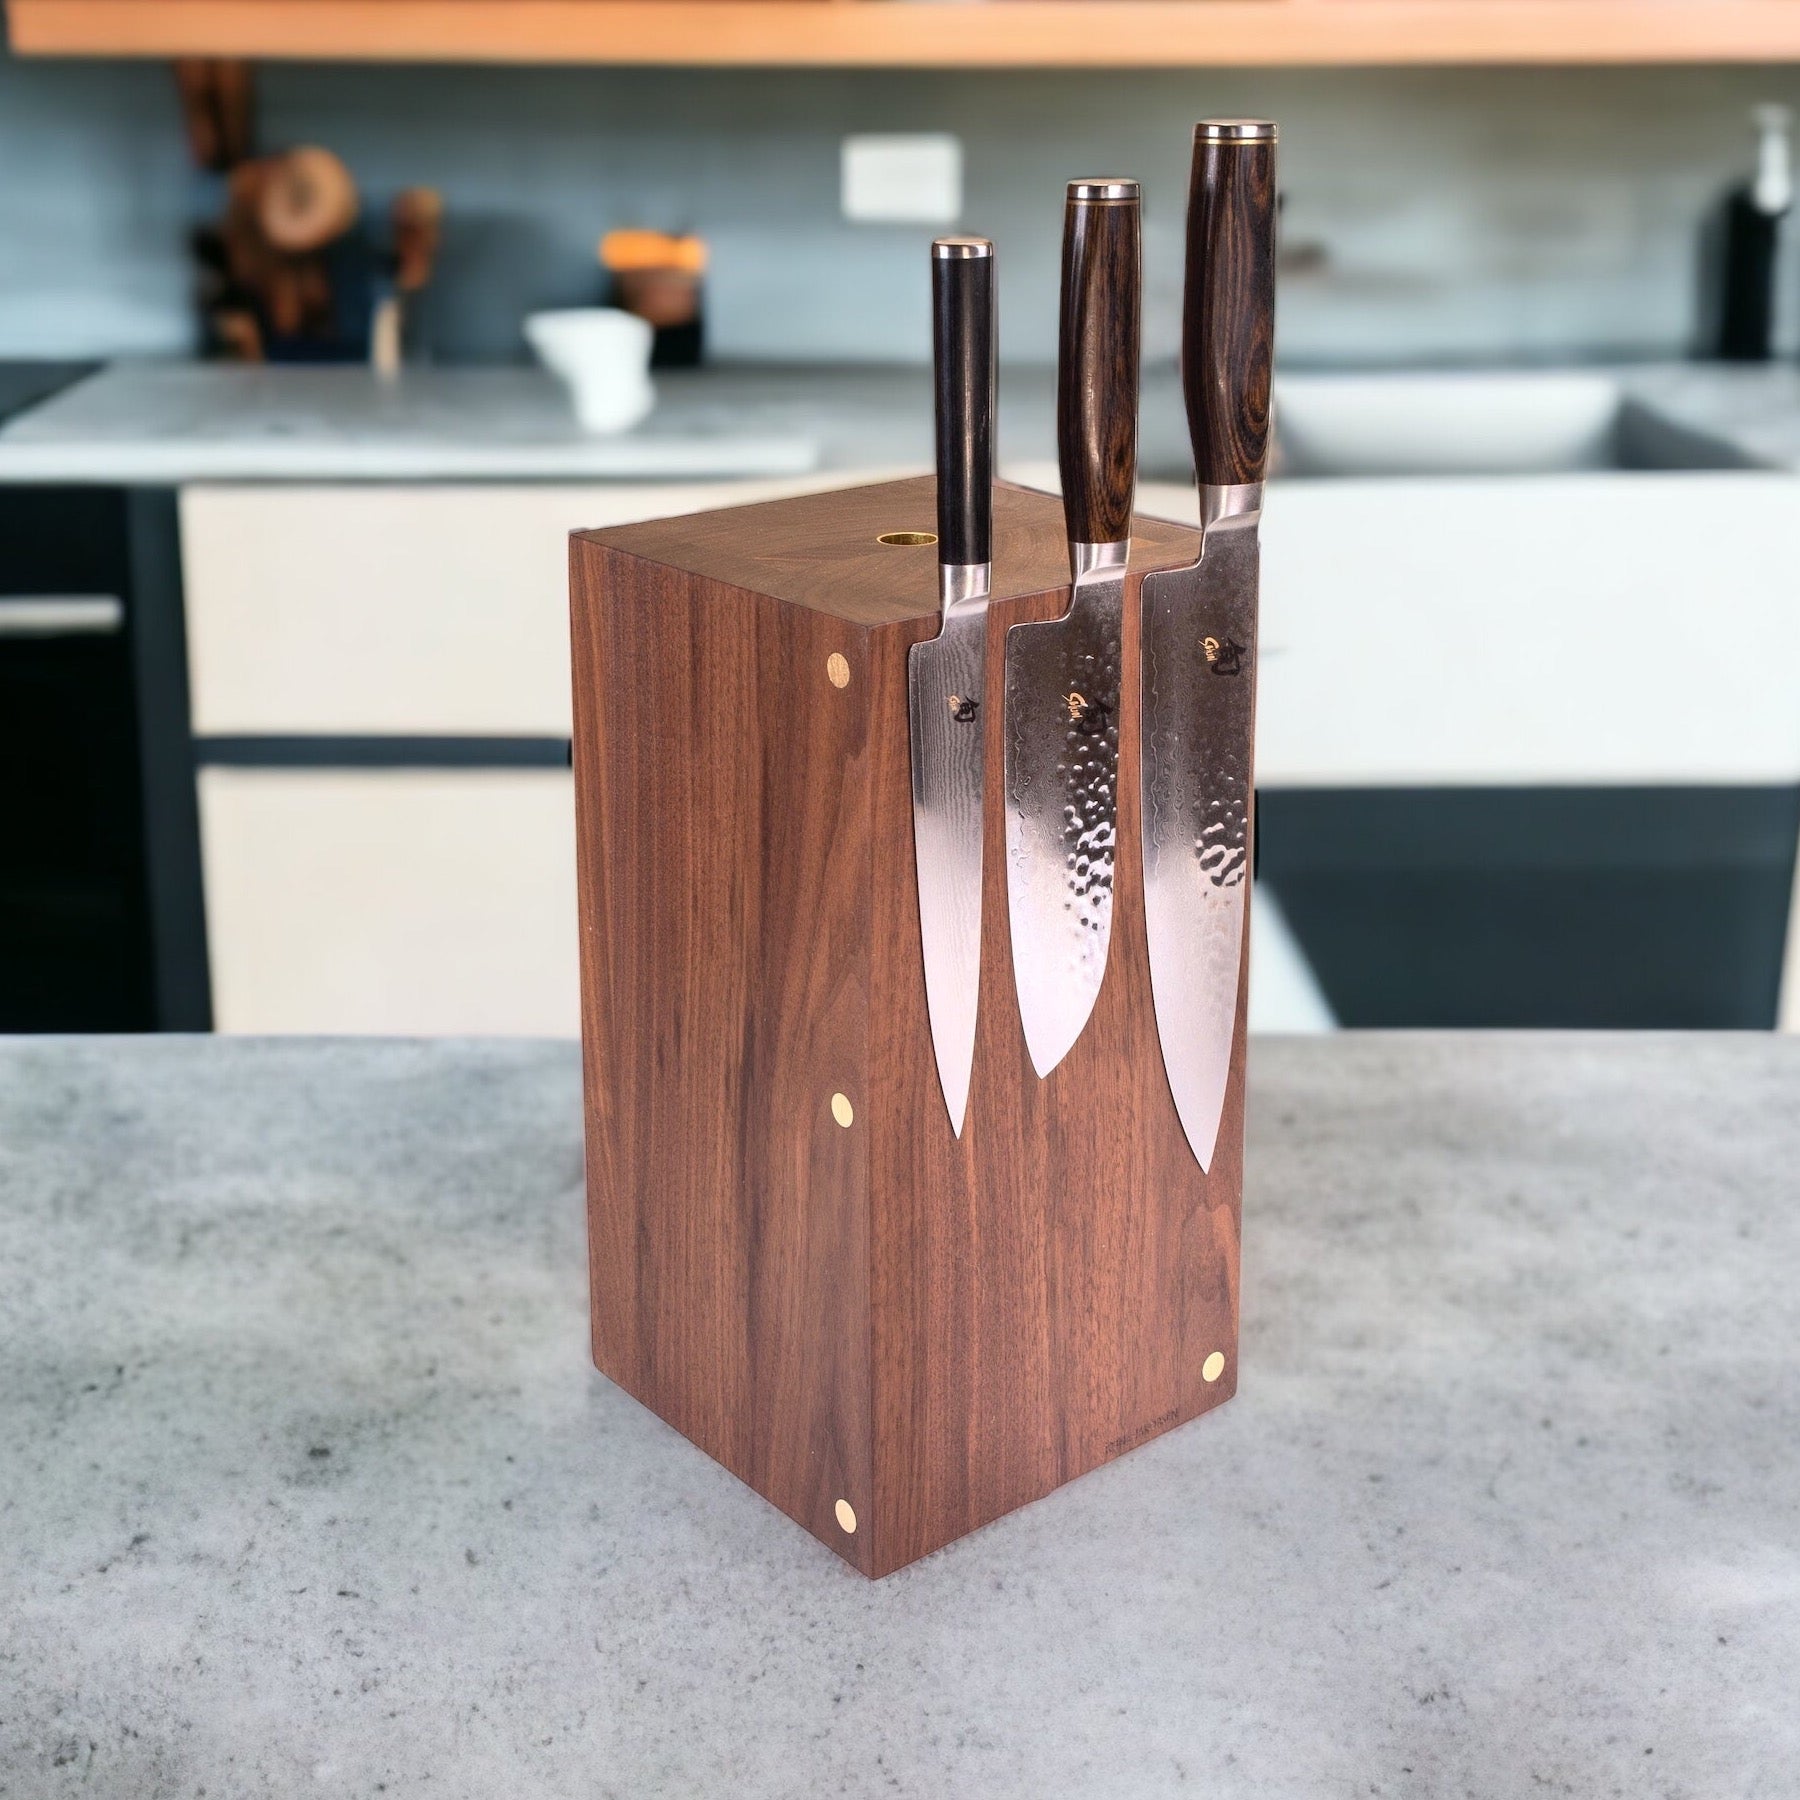 Rune-Jakobsen Woodworks 'Tower' magnetisk knivblok med messingrør_1 by Rune-Jakobsen Design